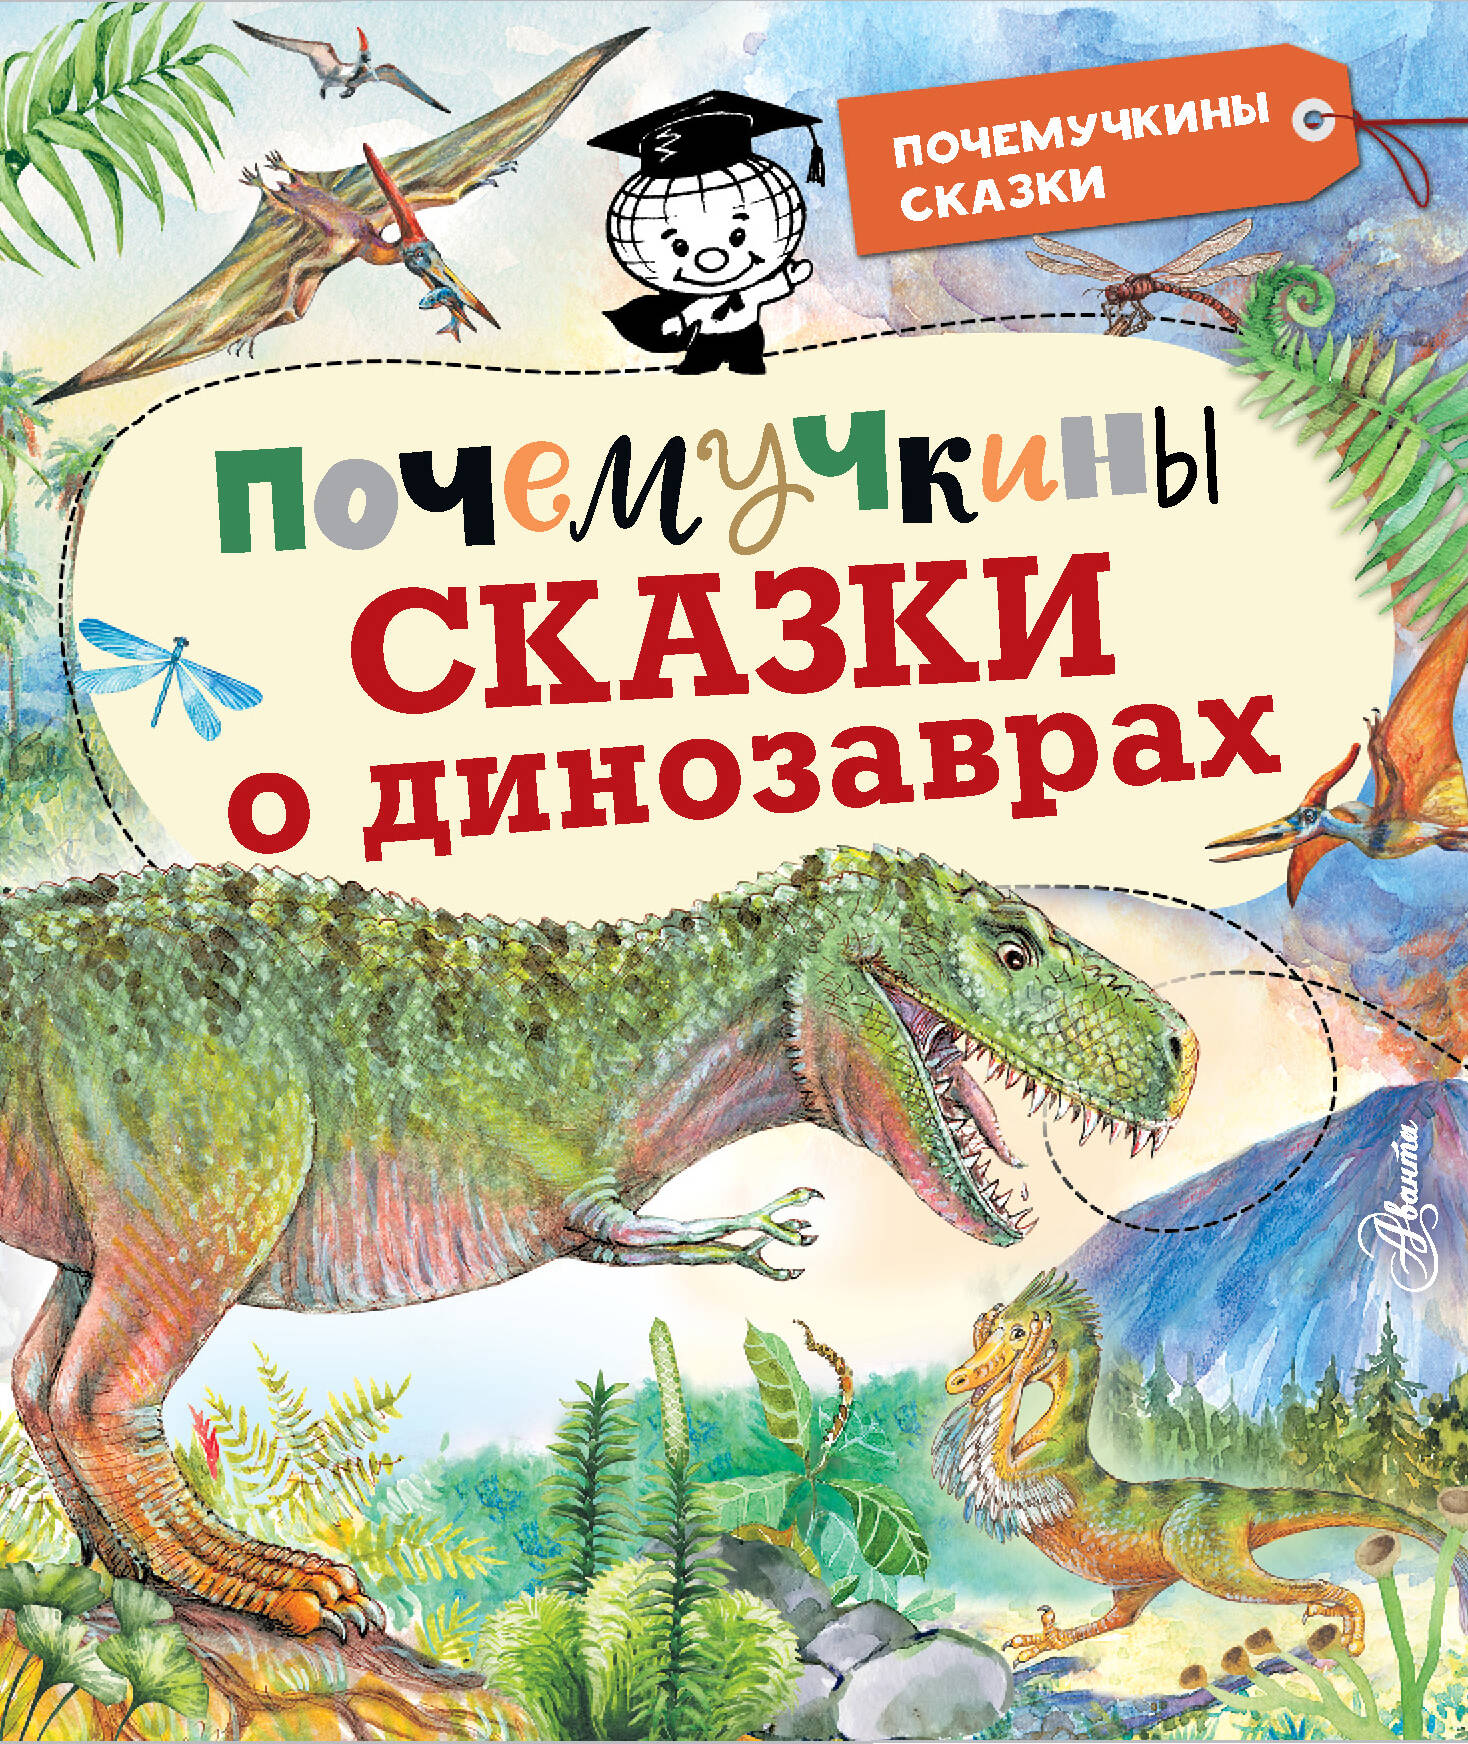 Акимушкин Игорь Иванович - Почемучкины сказки о динозаврах